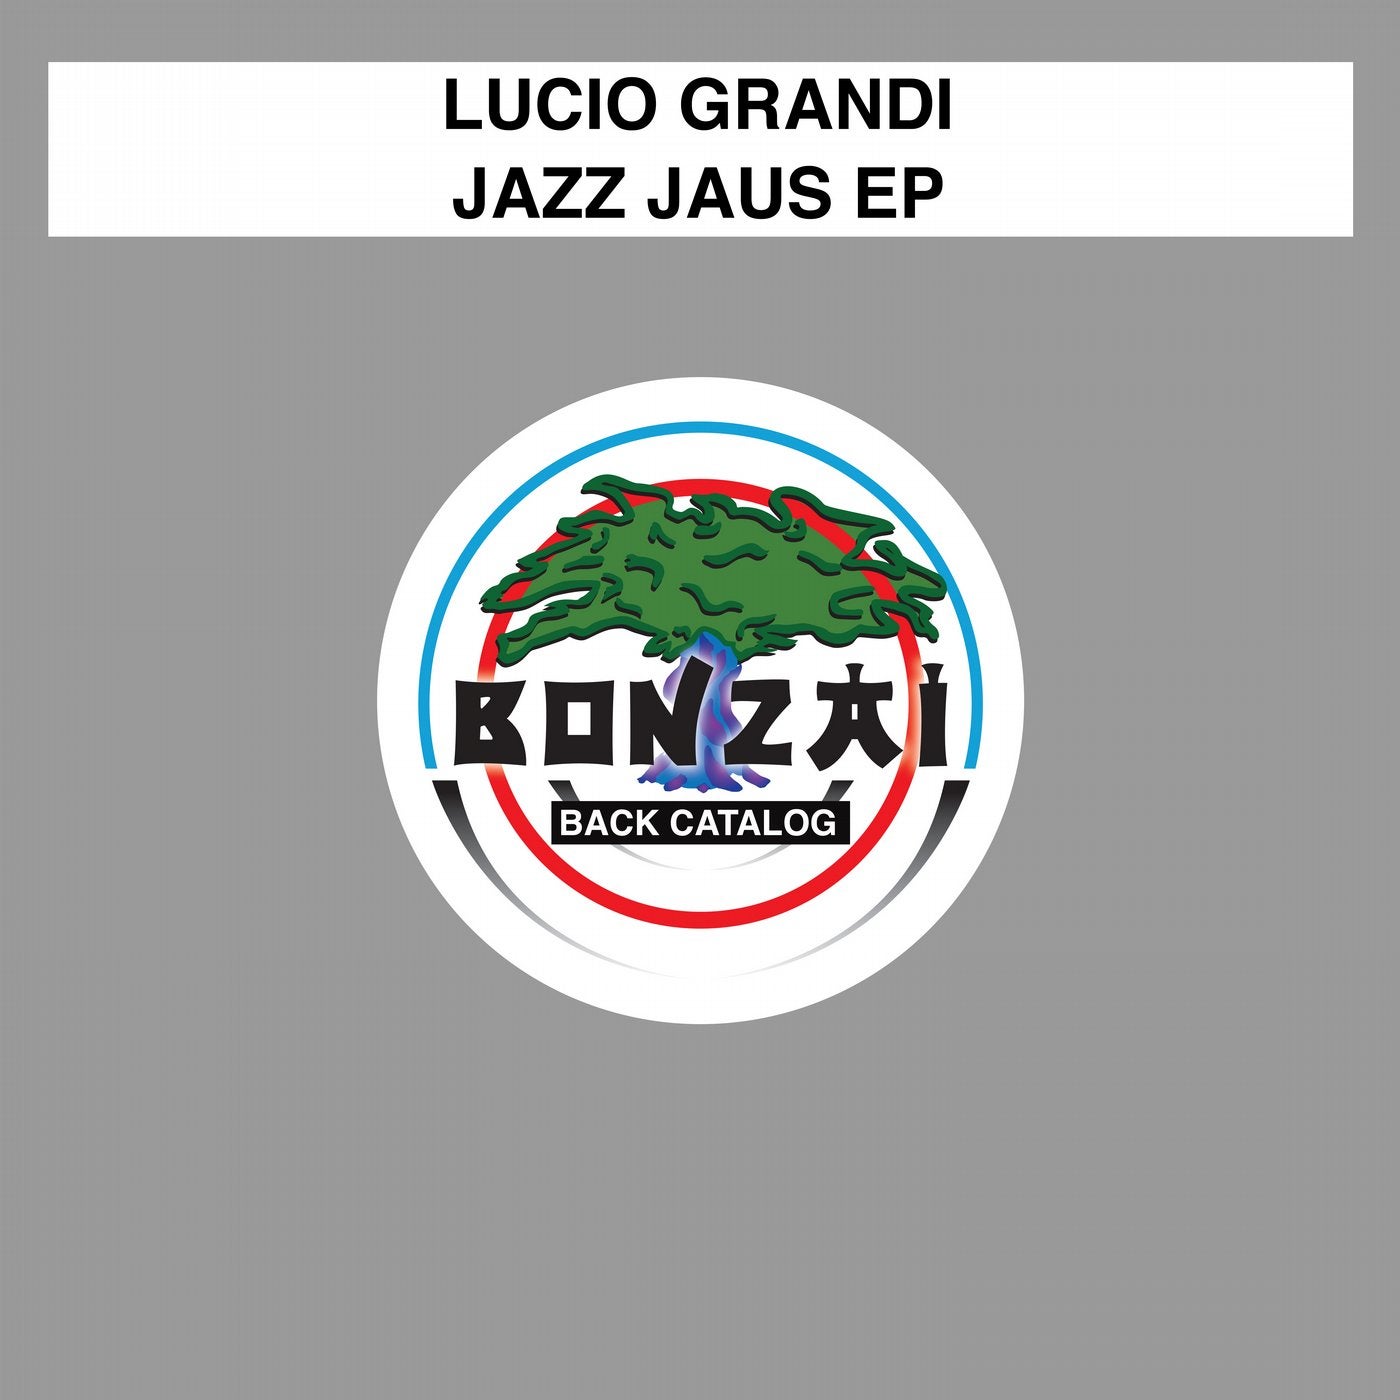 Jazz Jaus EP